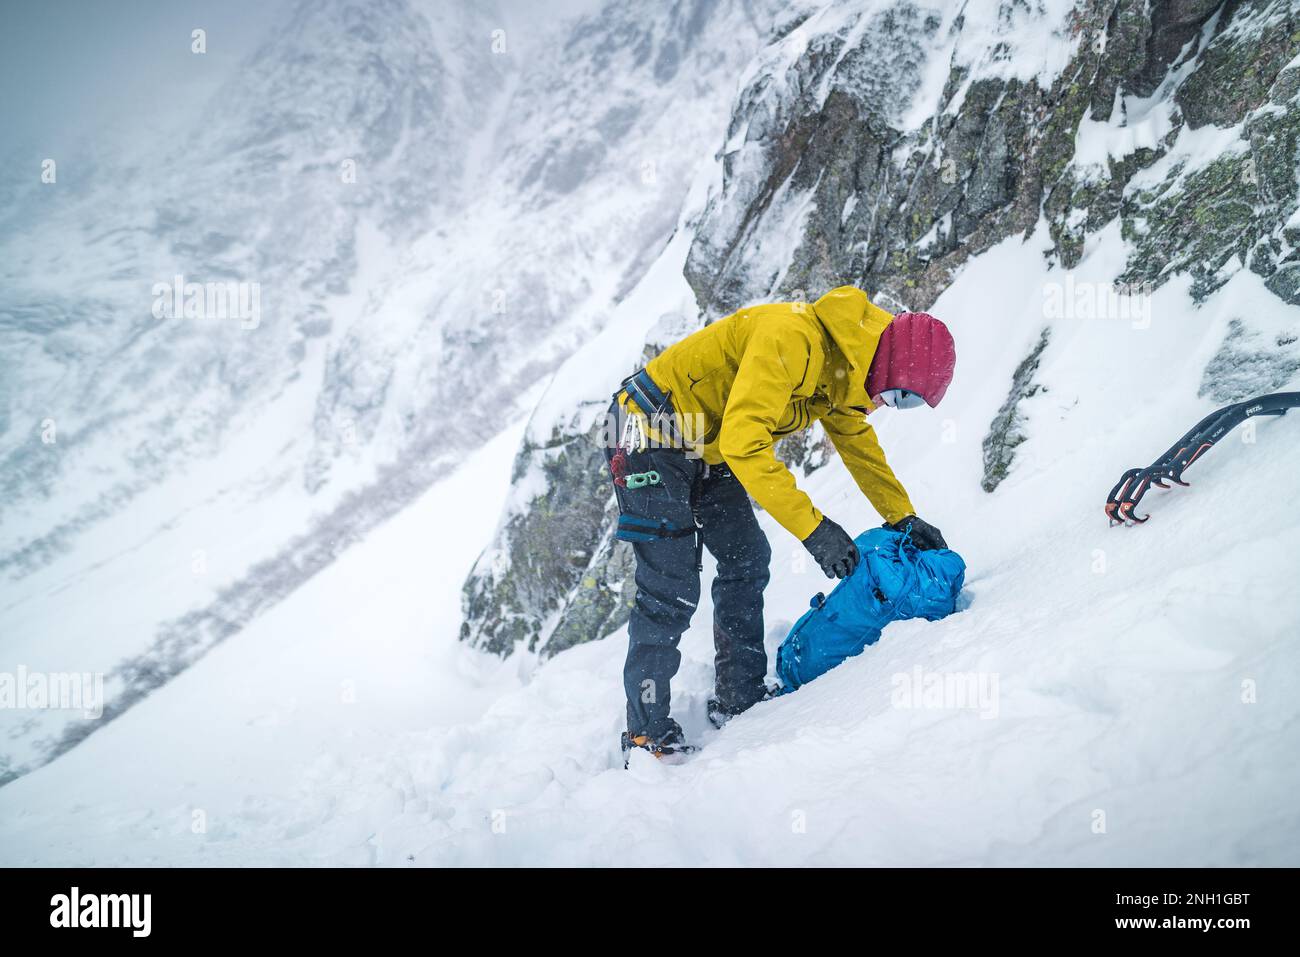 Hombre que se prepara para escalar el hielo rodeado de paisaje nevado Foto de stock